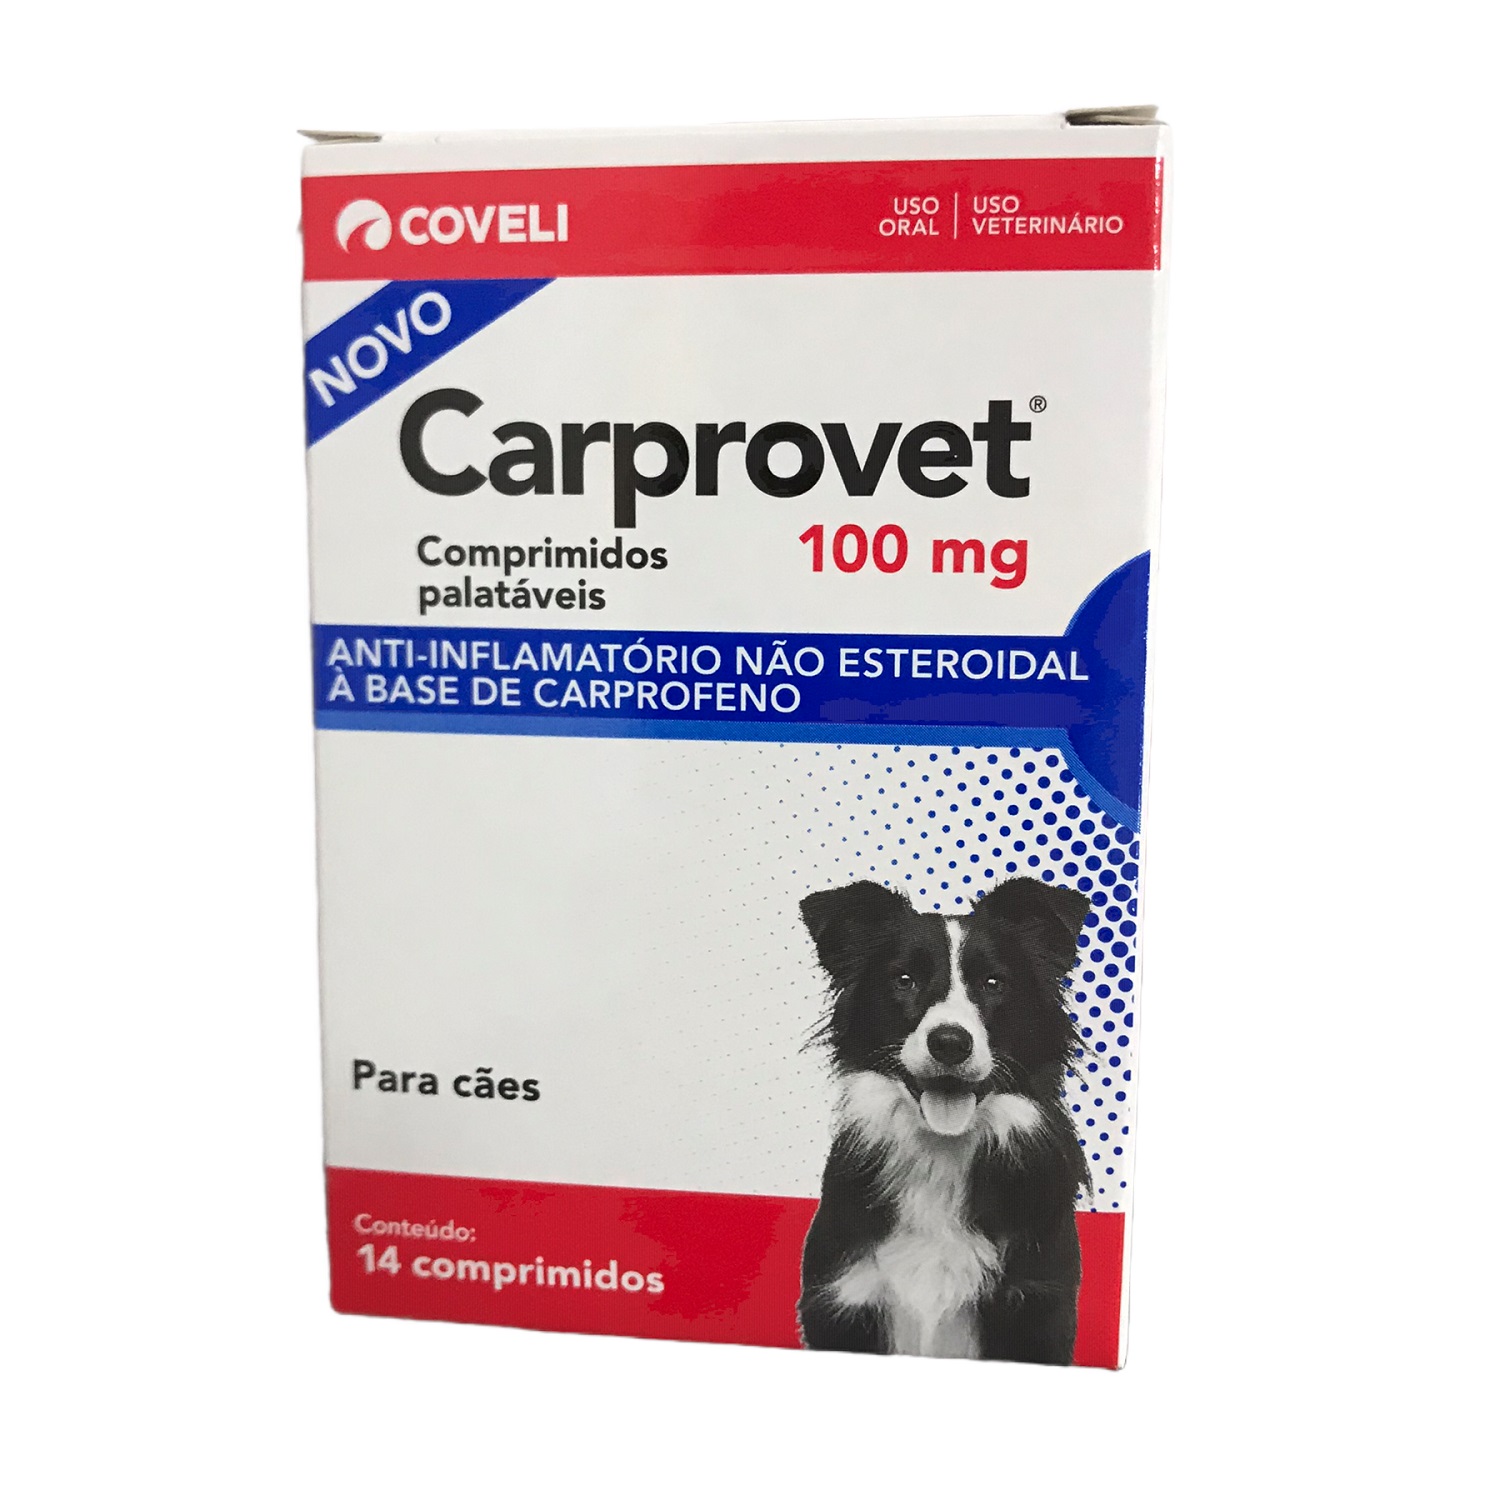 Carprovet 100mg (14 comprimidos) - Coveli